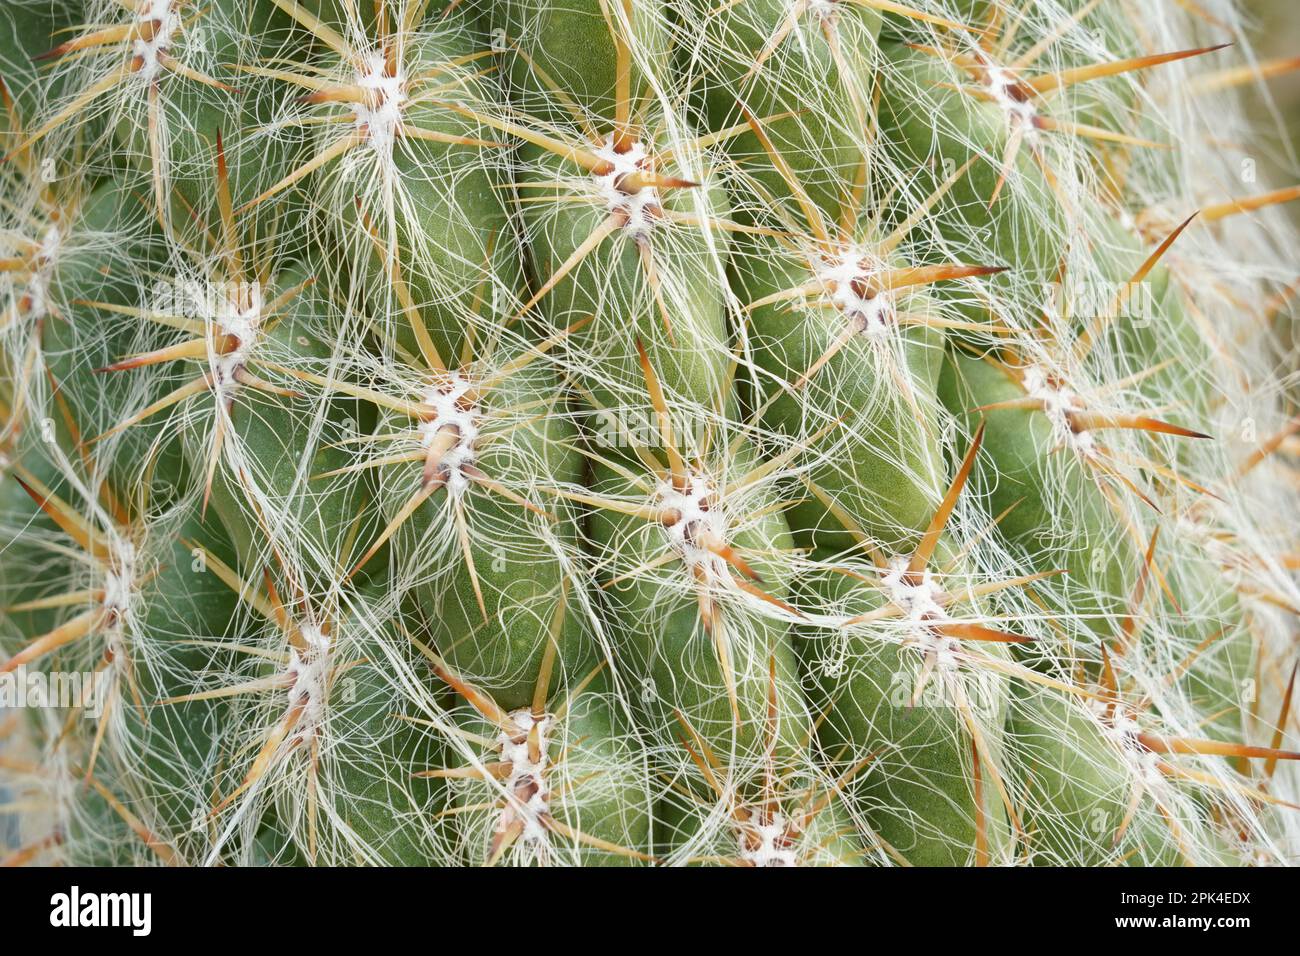 Areole di Cactus con spine da vicino. Ci sono spesse spine appuntite che crescono da areole e sottili filamenti bianchi simili ai capelli che ricoprono la pianta. Foto Stock